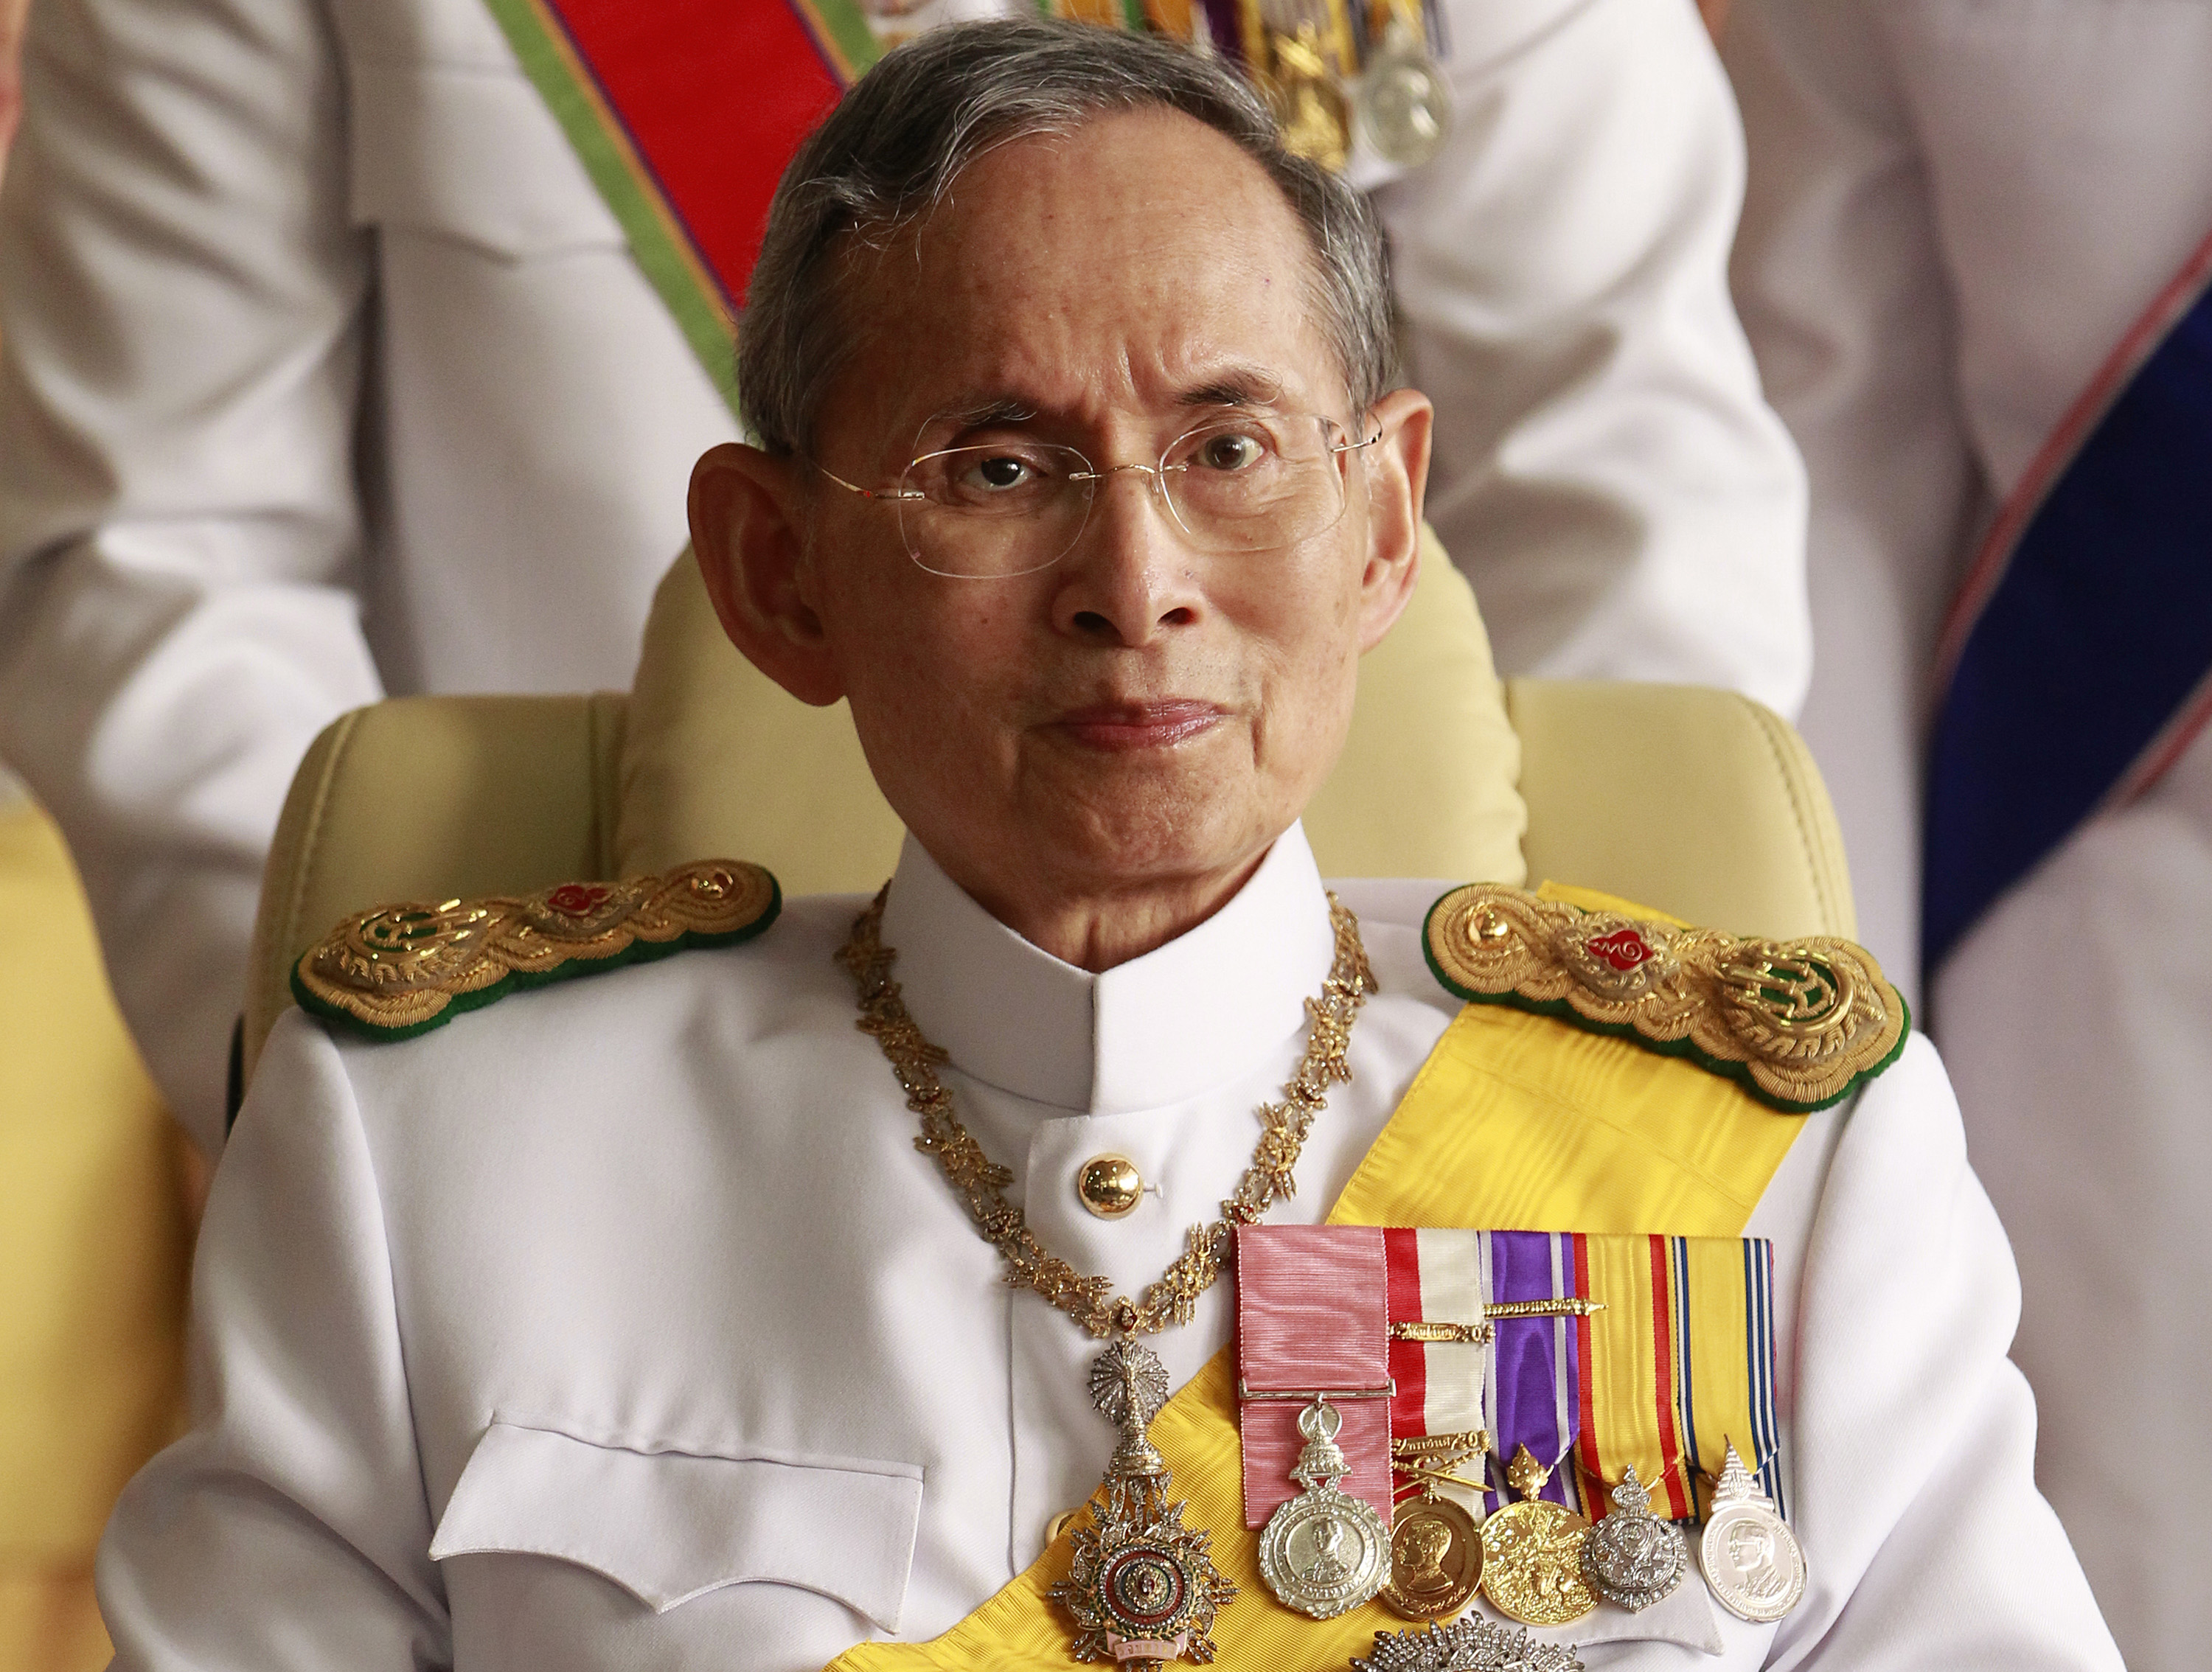 تايلانديون يخلدون ذكرى ملكهم الراحل بطريقة غريبة